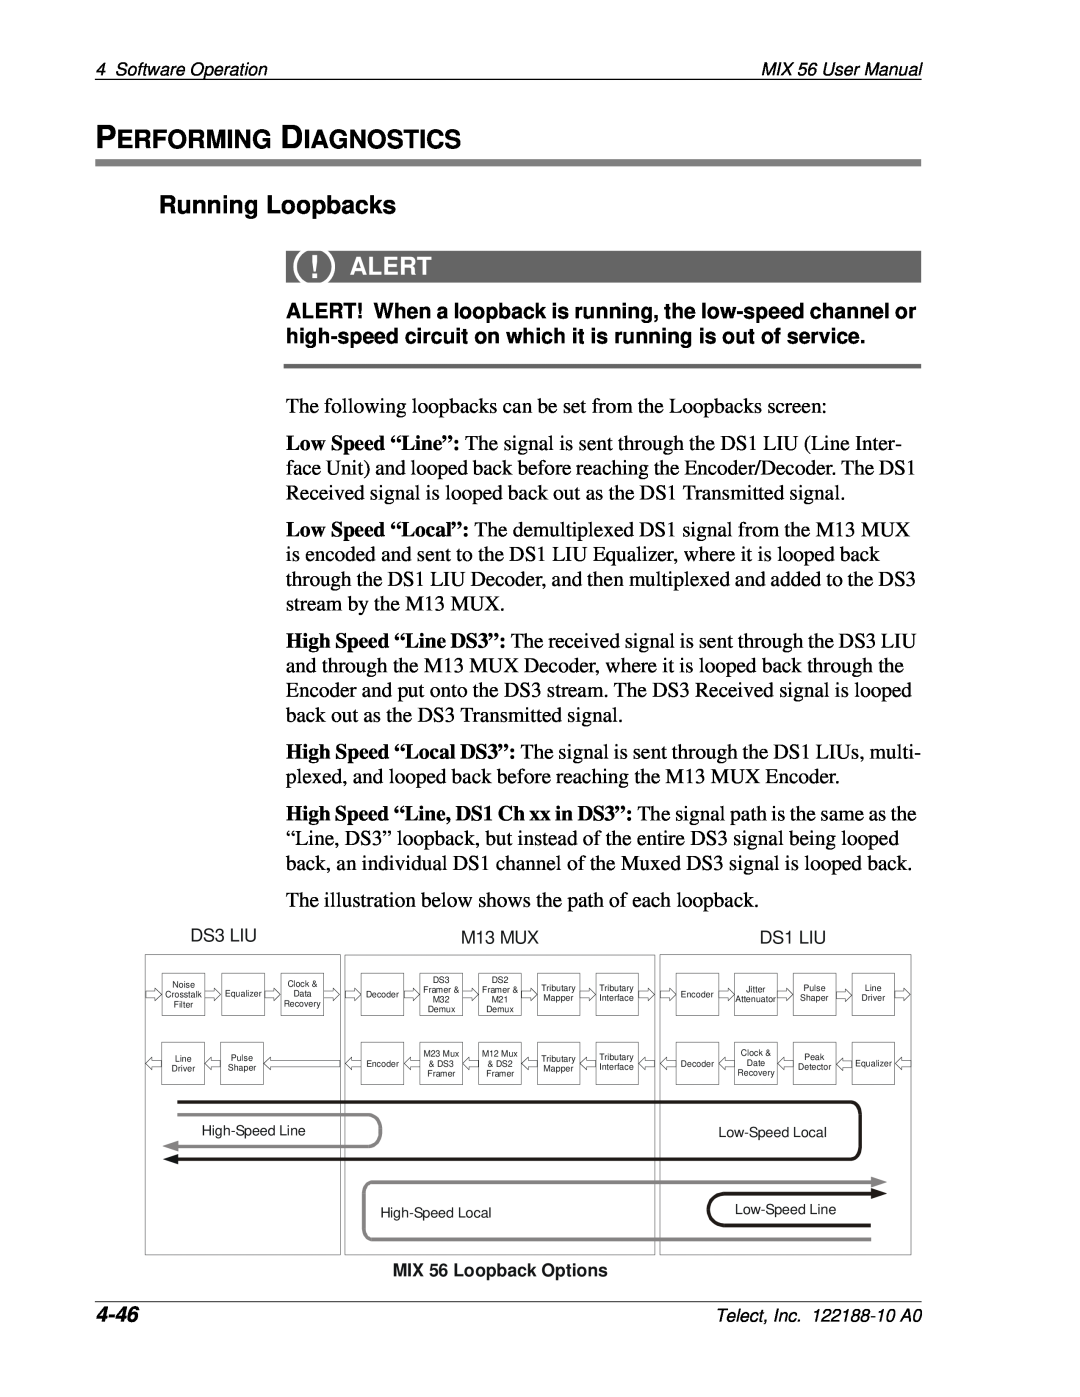 Telect MIX 56 user manual PERFORMING DIAGNOSTICS Running Loopbacks, 4-46, Alert 